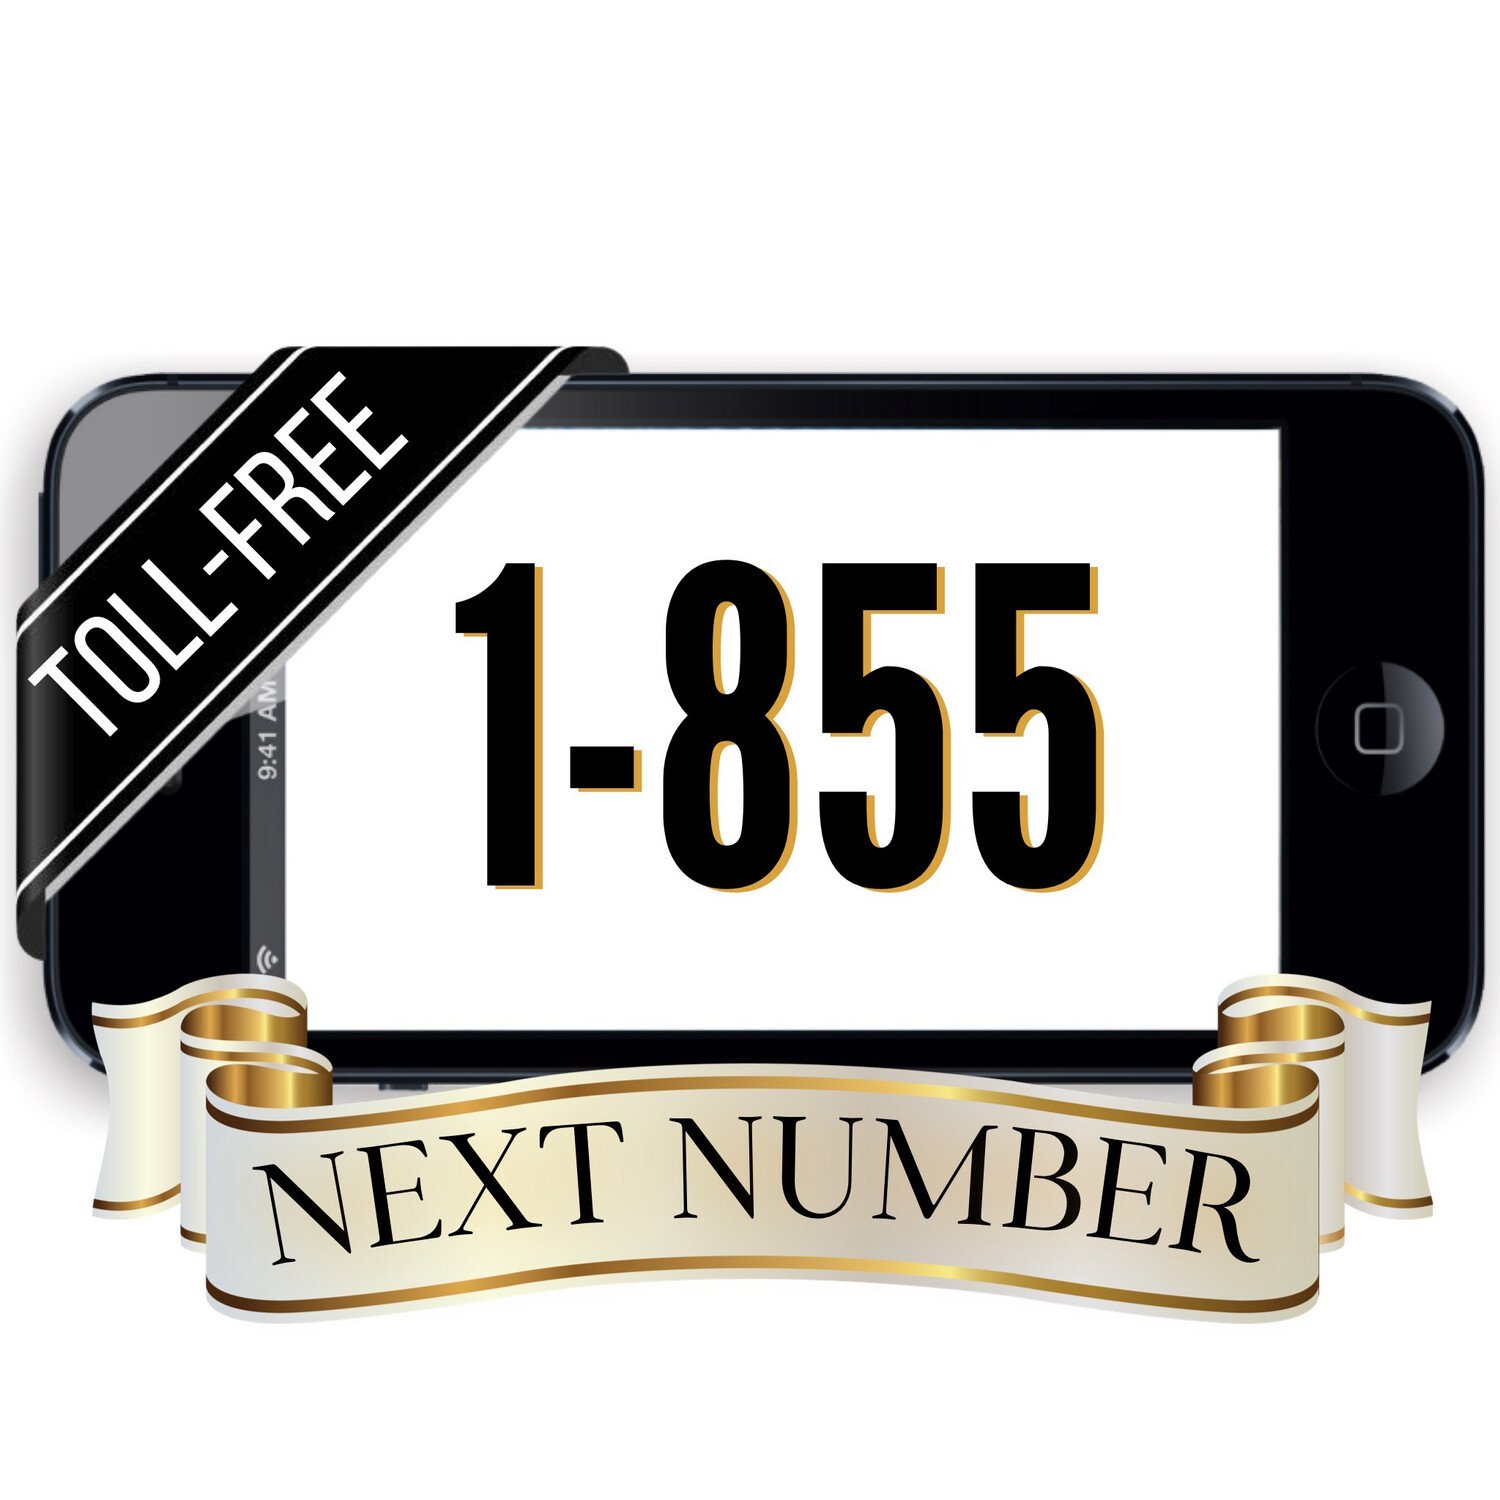 Next 1-855 Number